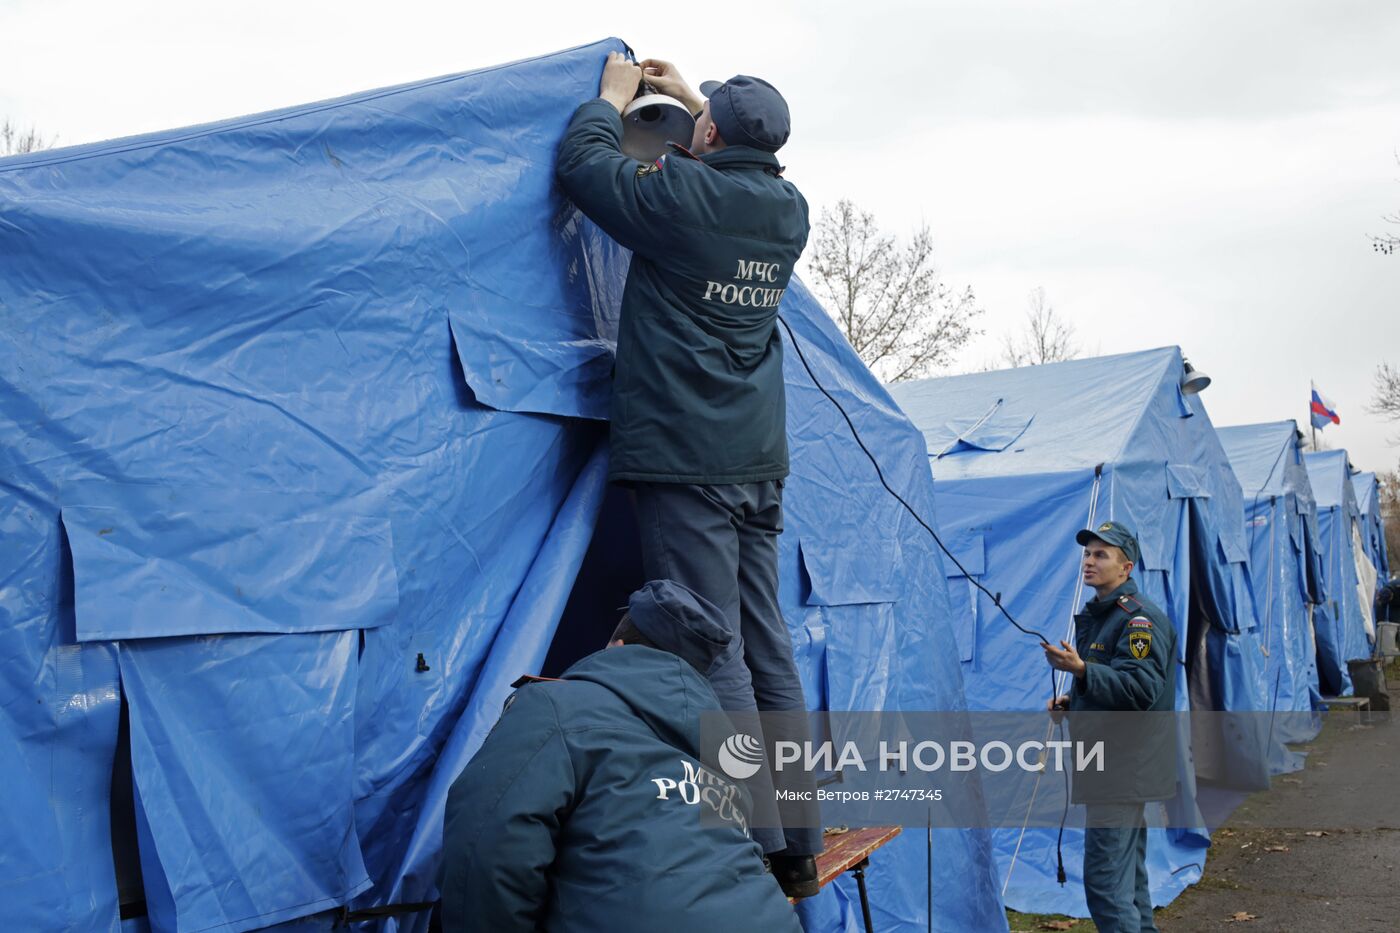 Установка палаток для обогрева в Крыму